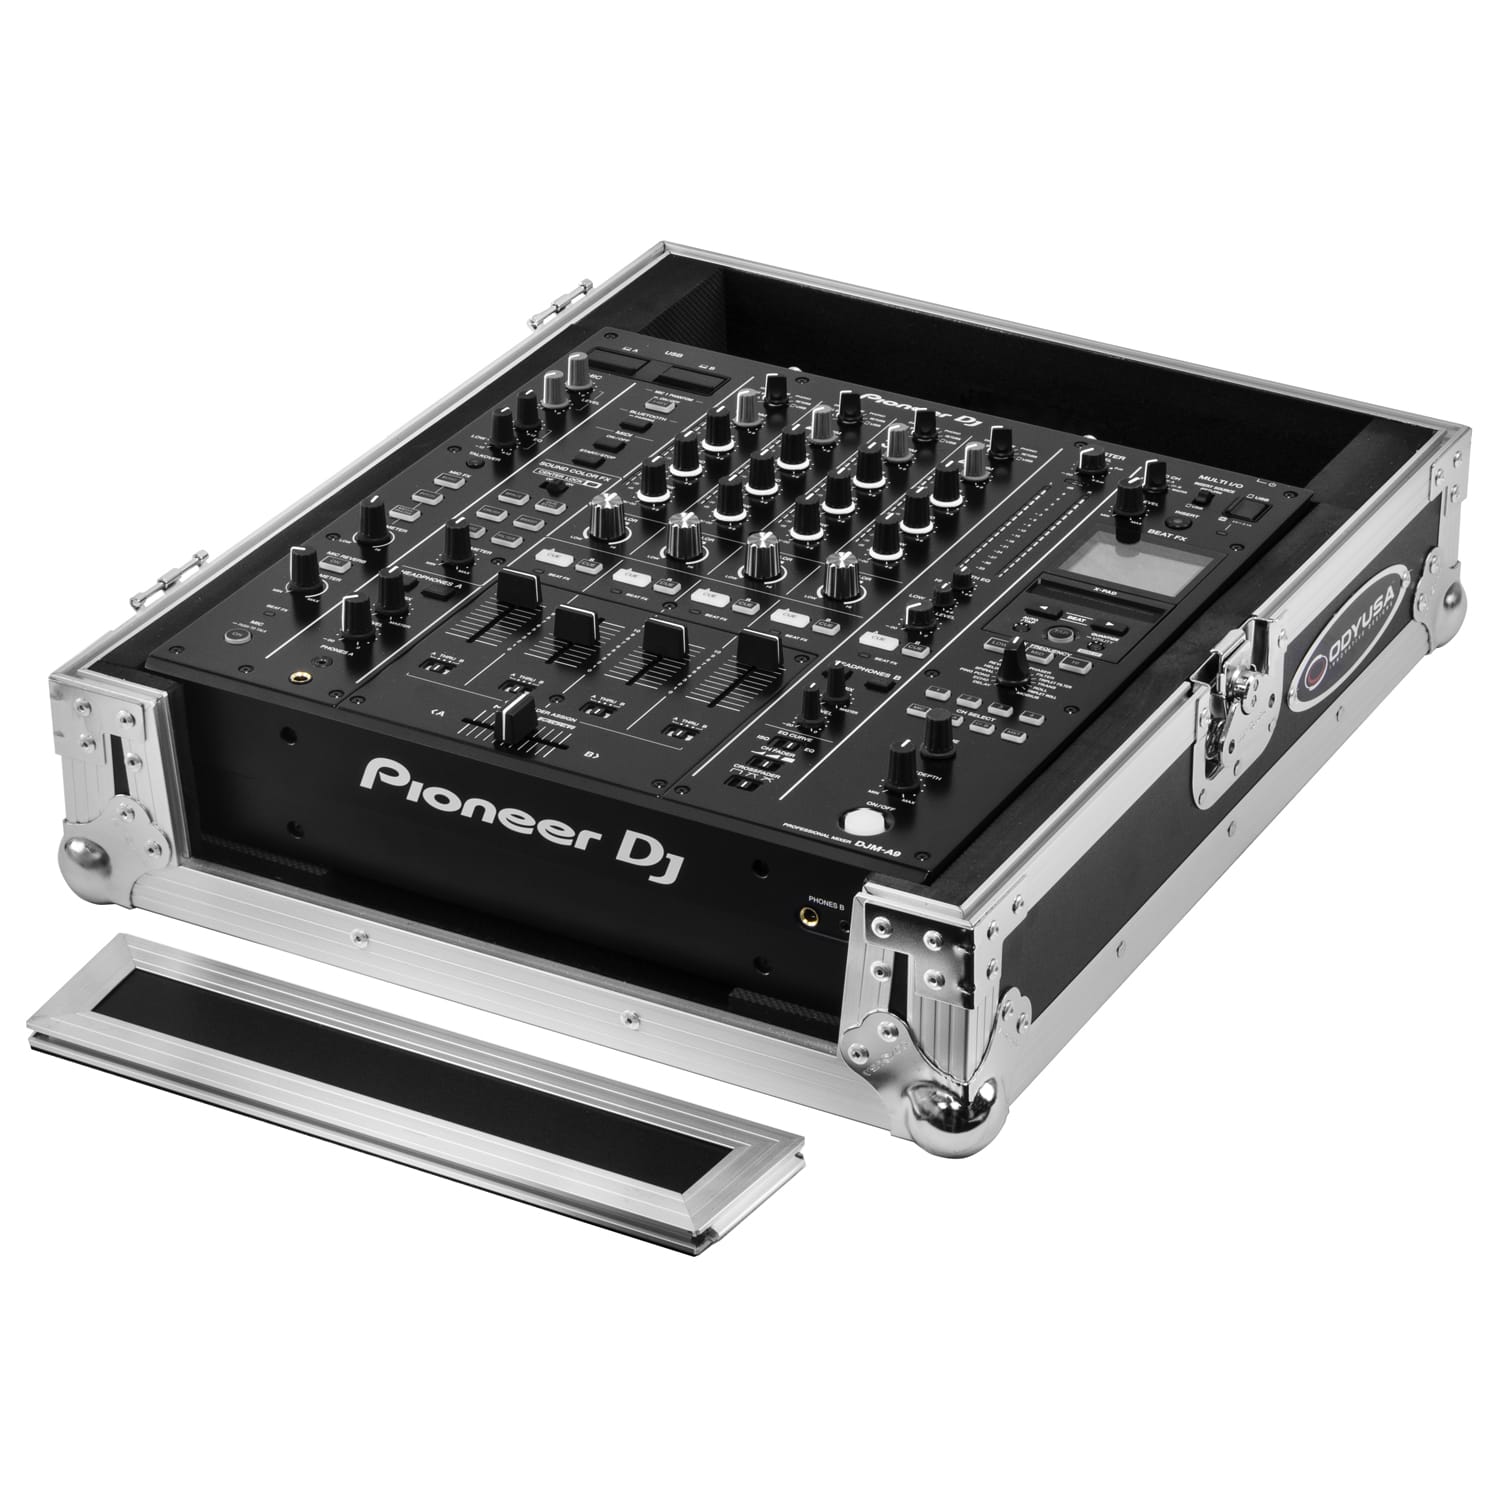 MESA PIONEER DJ DJM-A9